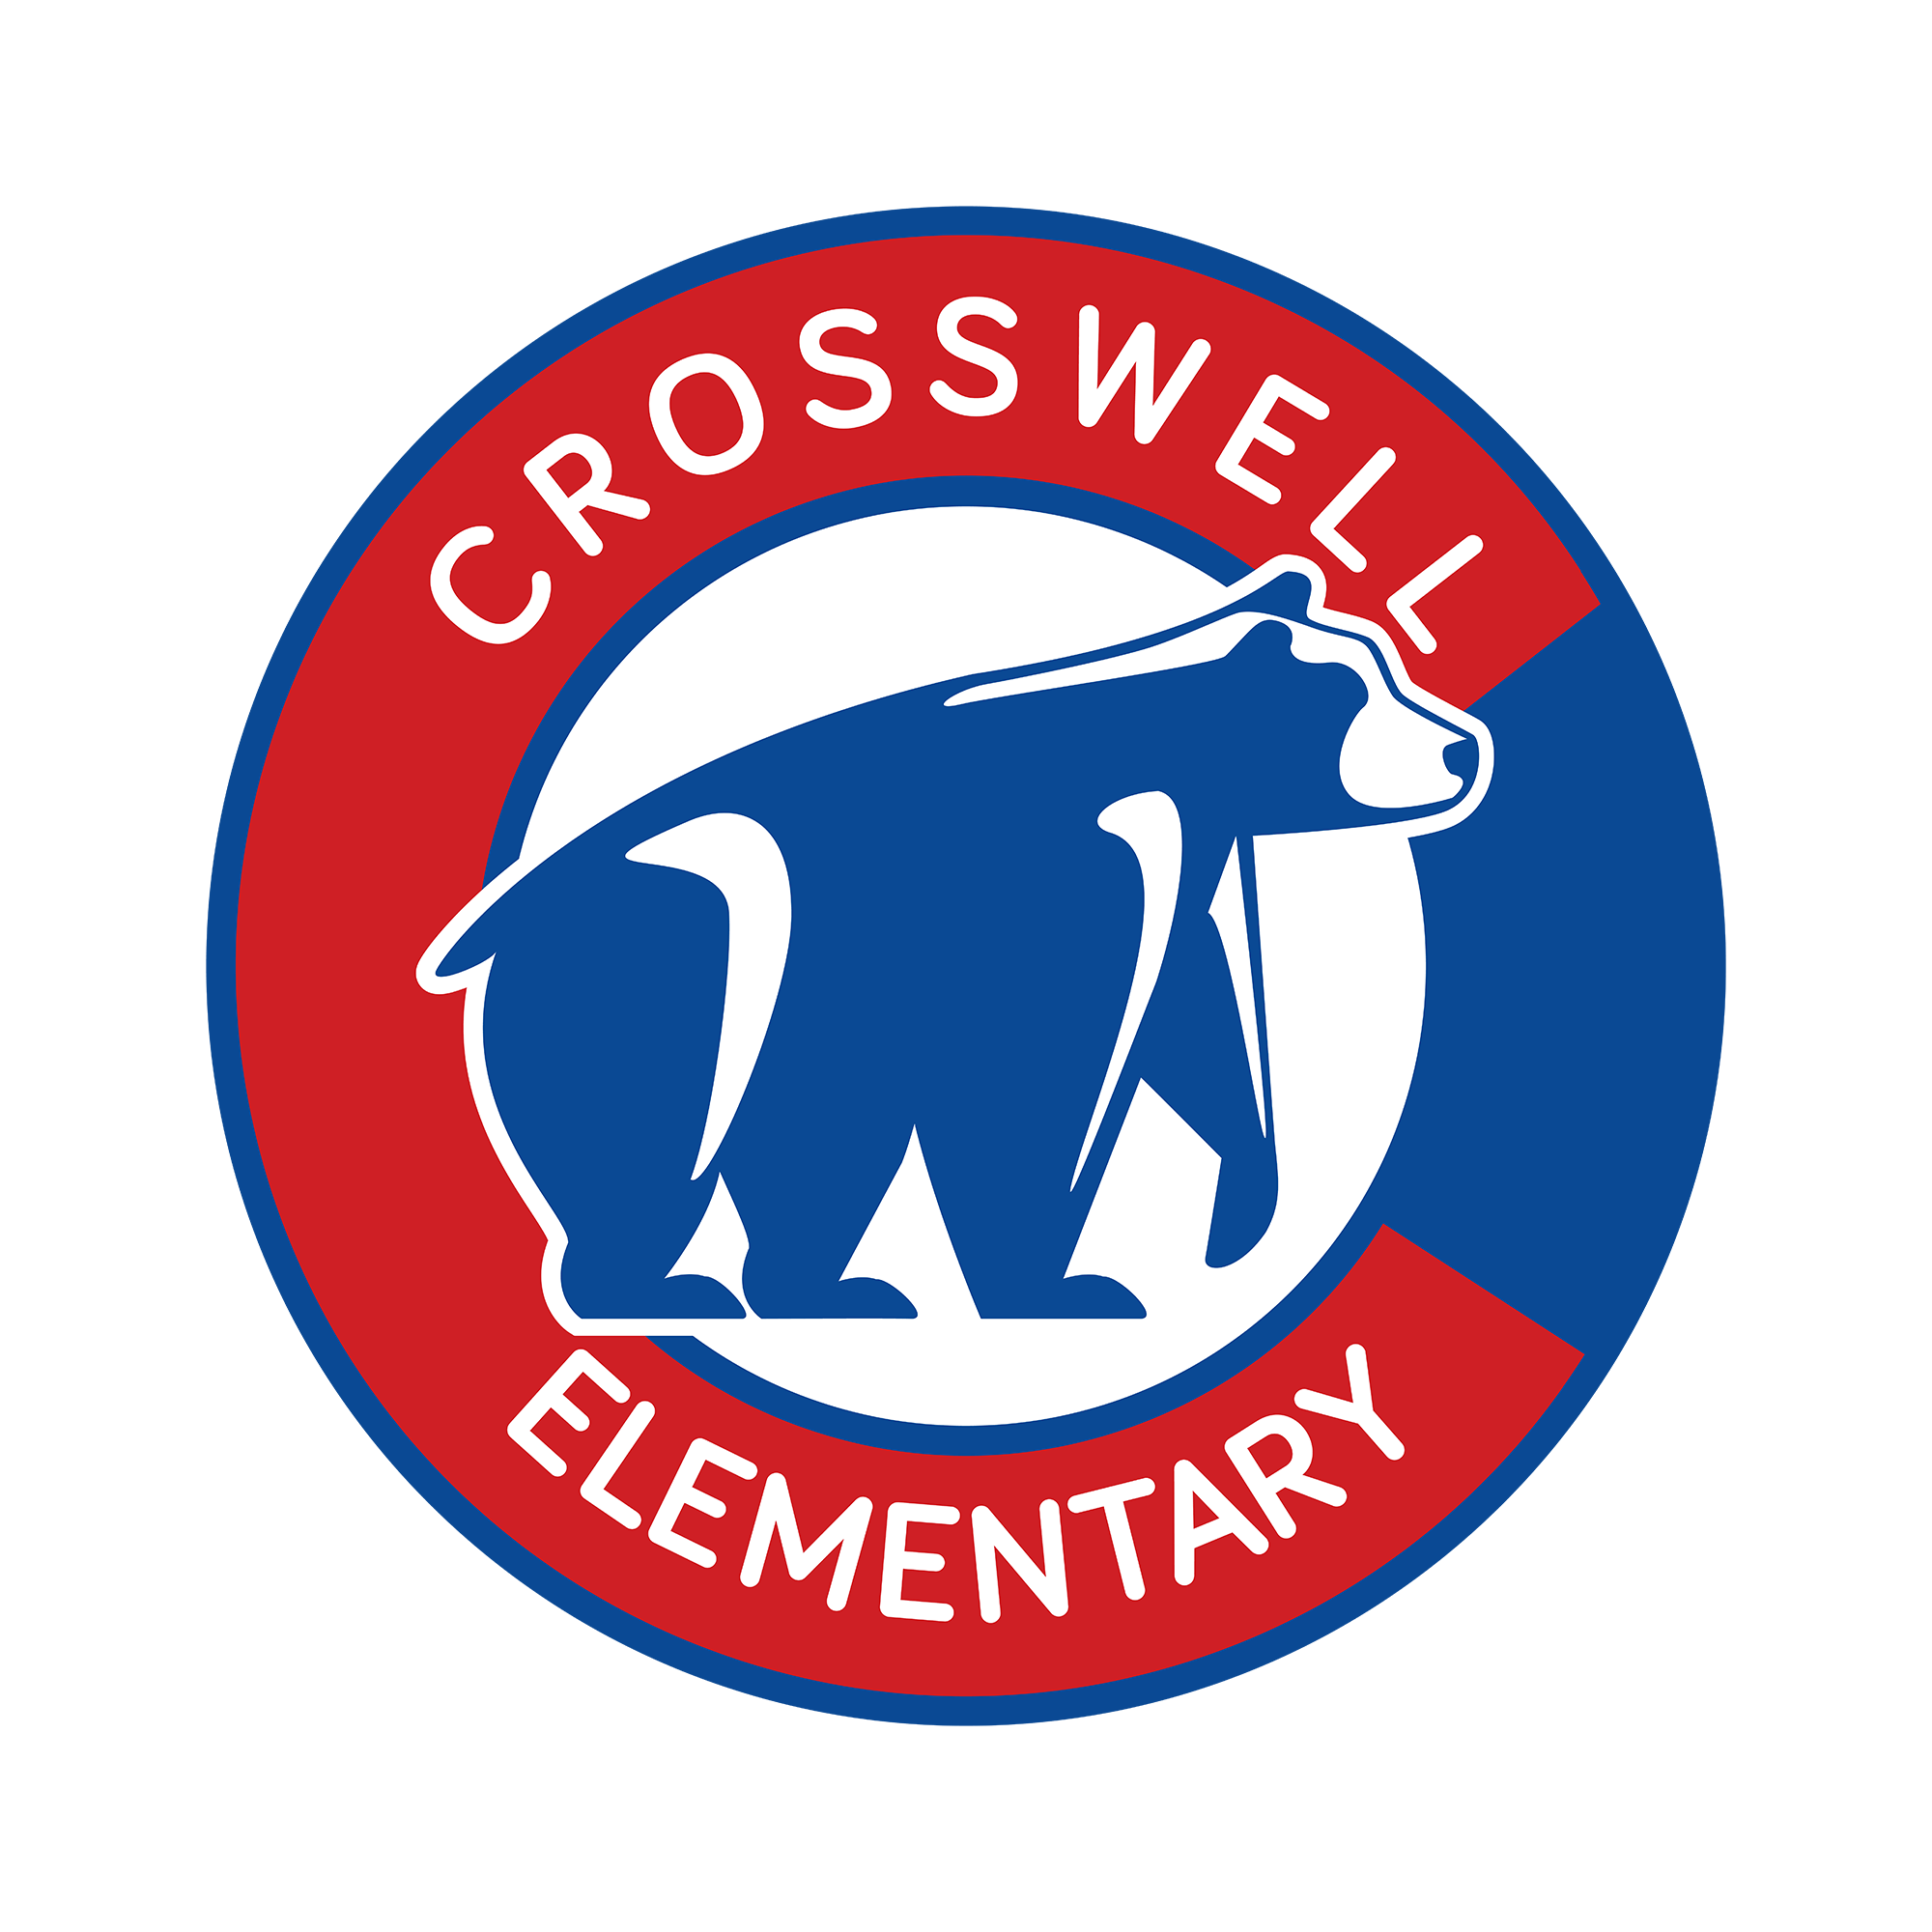 Schoology Logo - Schoology - Crosswell Elementary School